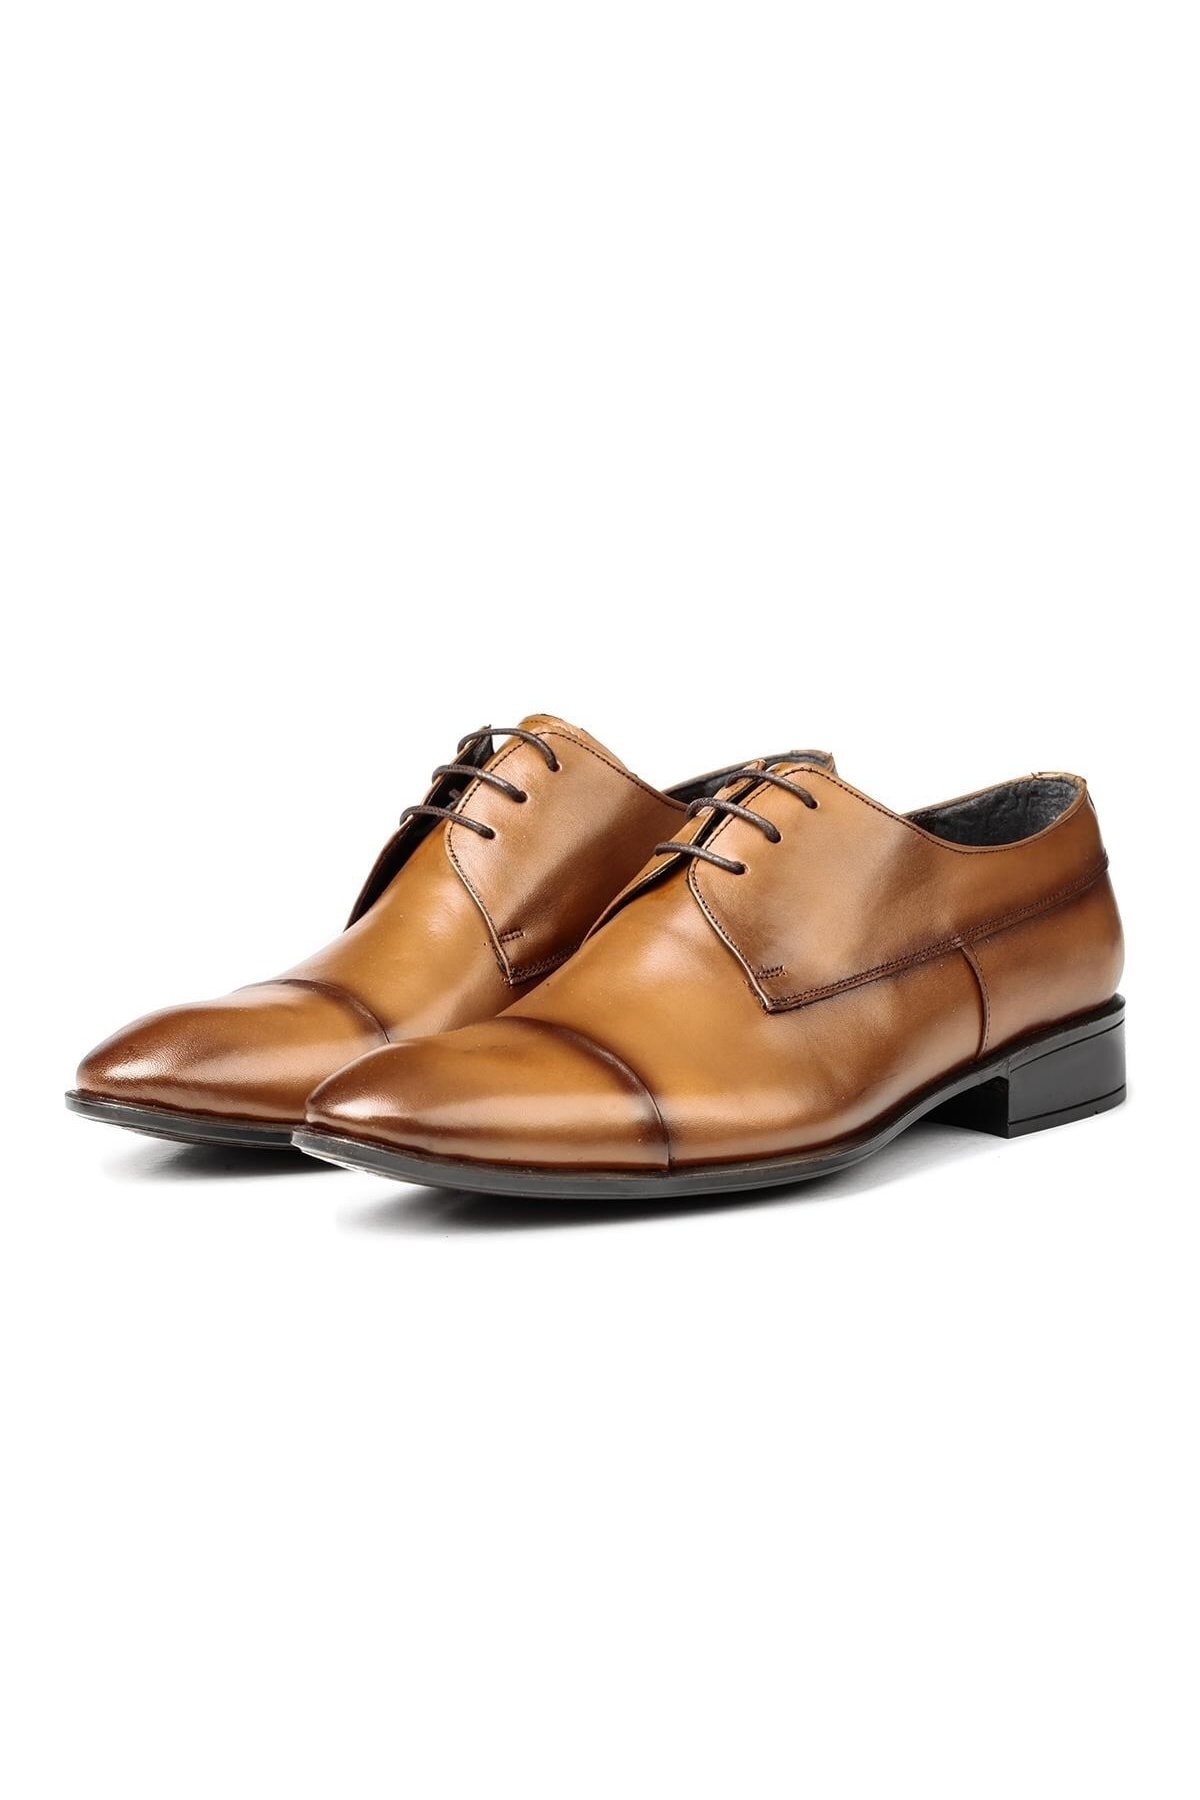 Levně Ducavelli Classics Genuine Leather Men's Classic Shoes